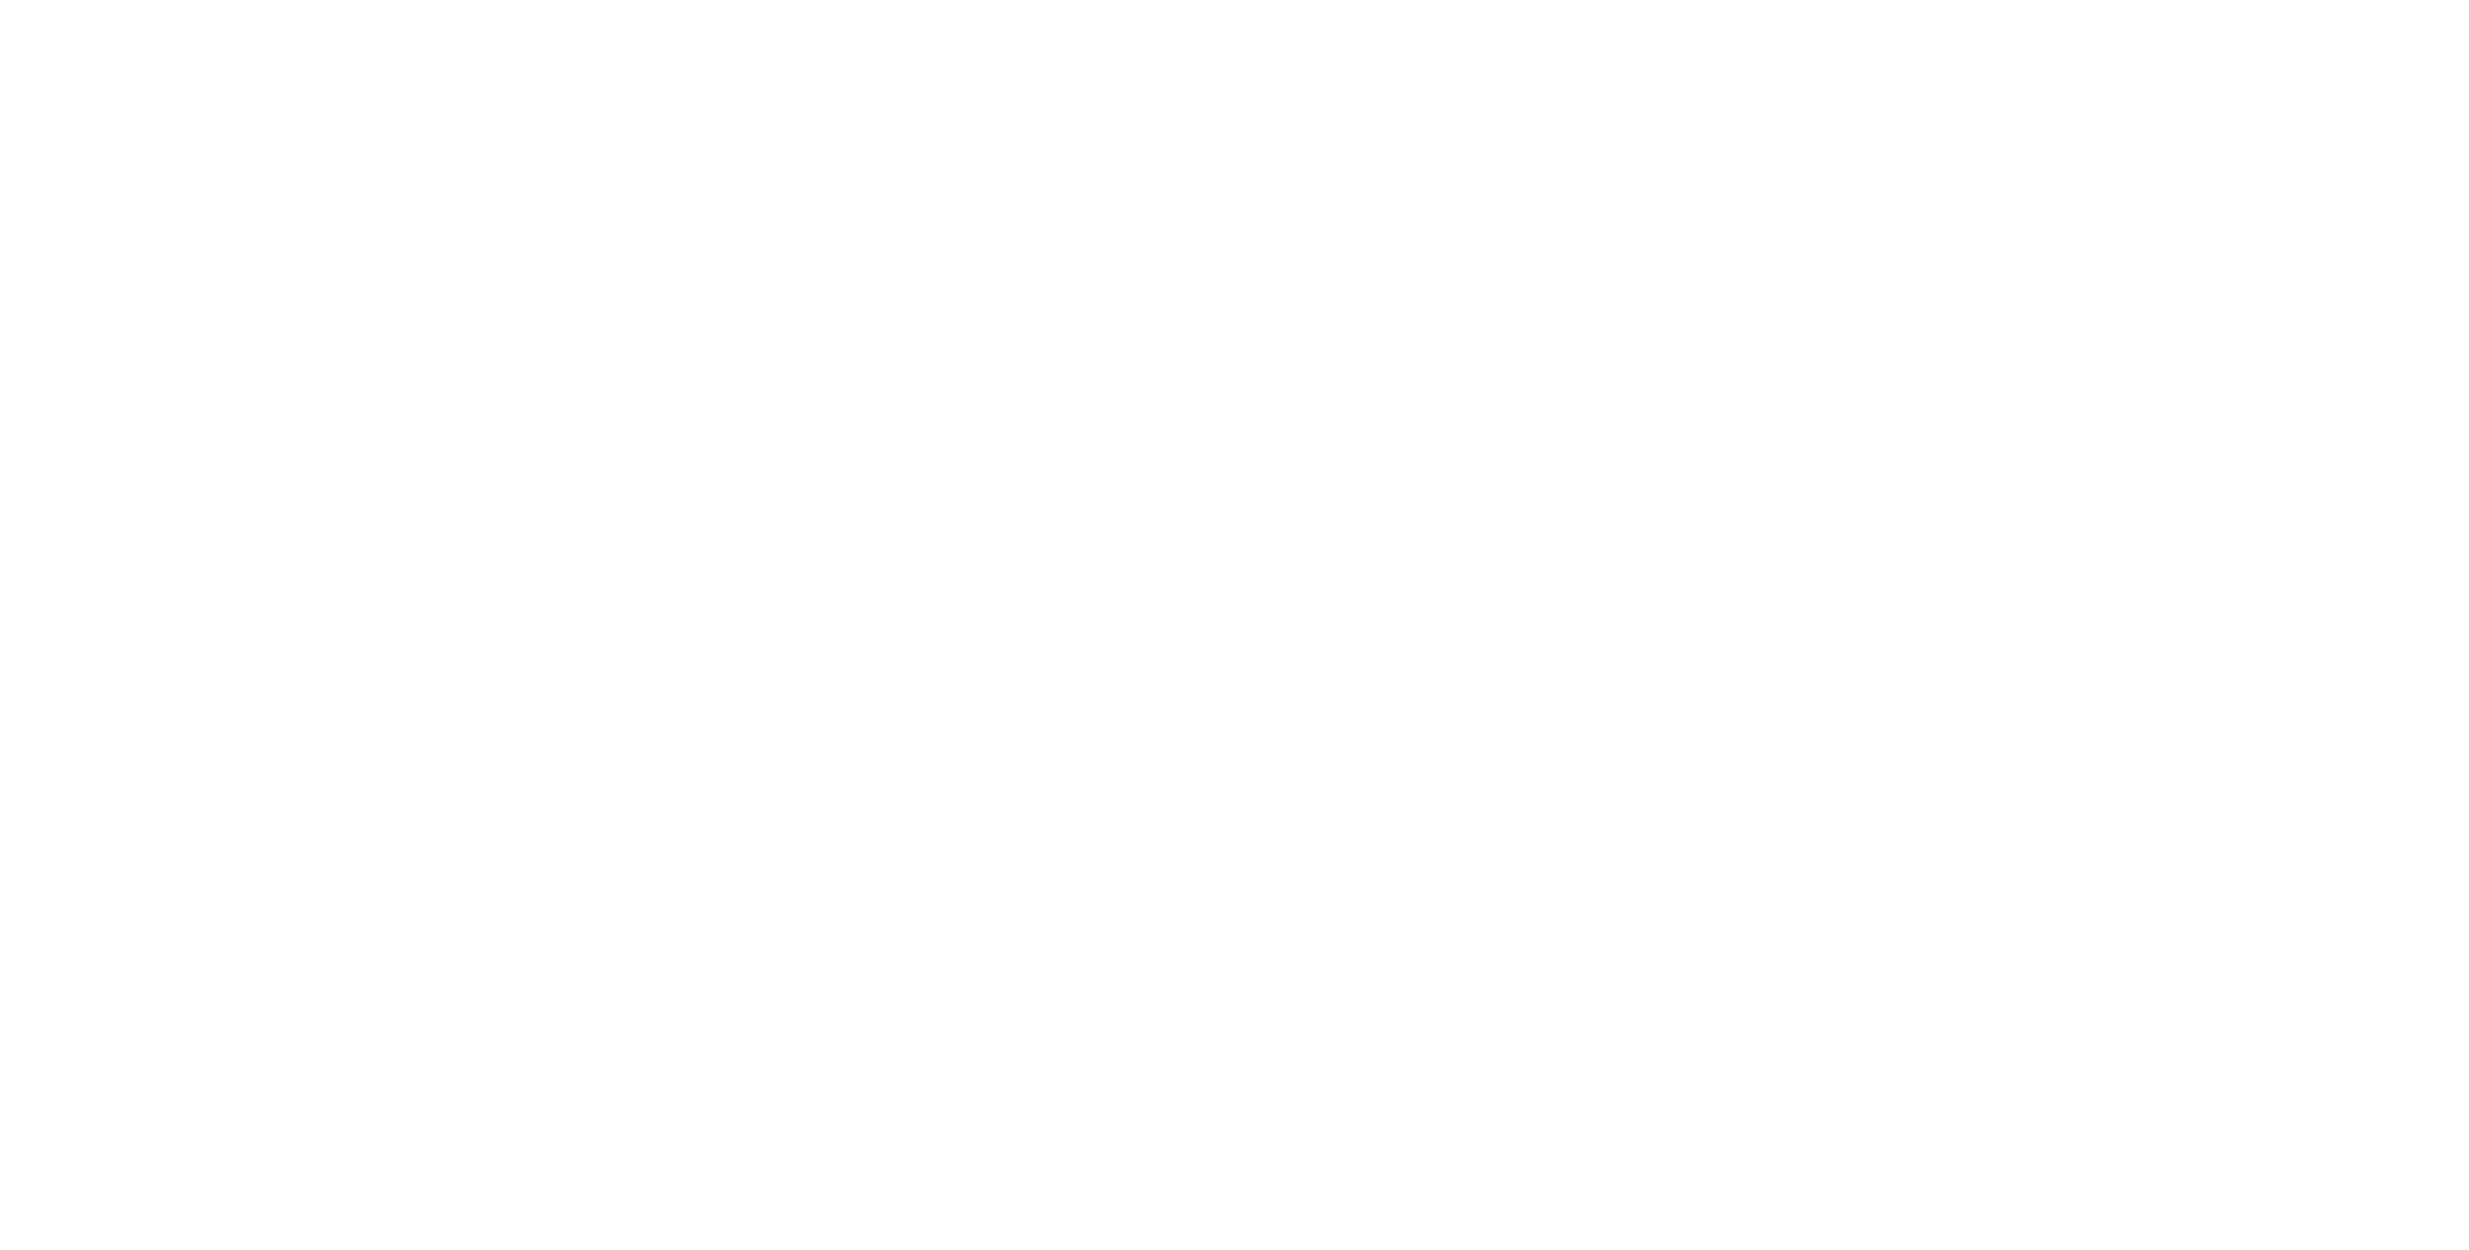 Harmony at Hurley Farms